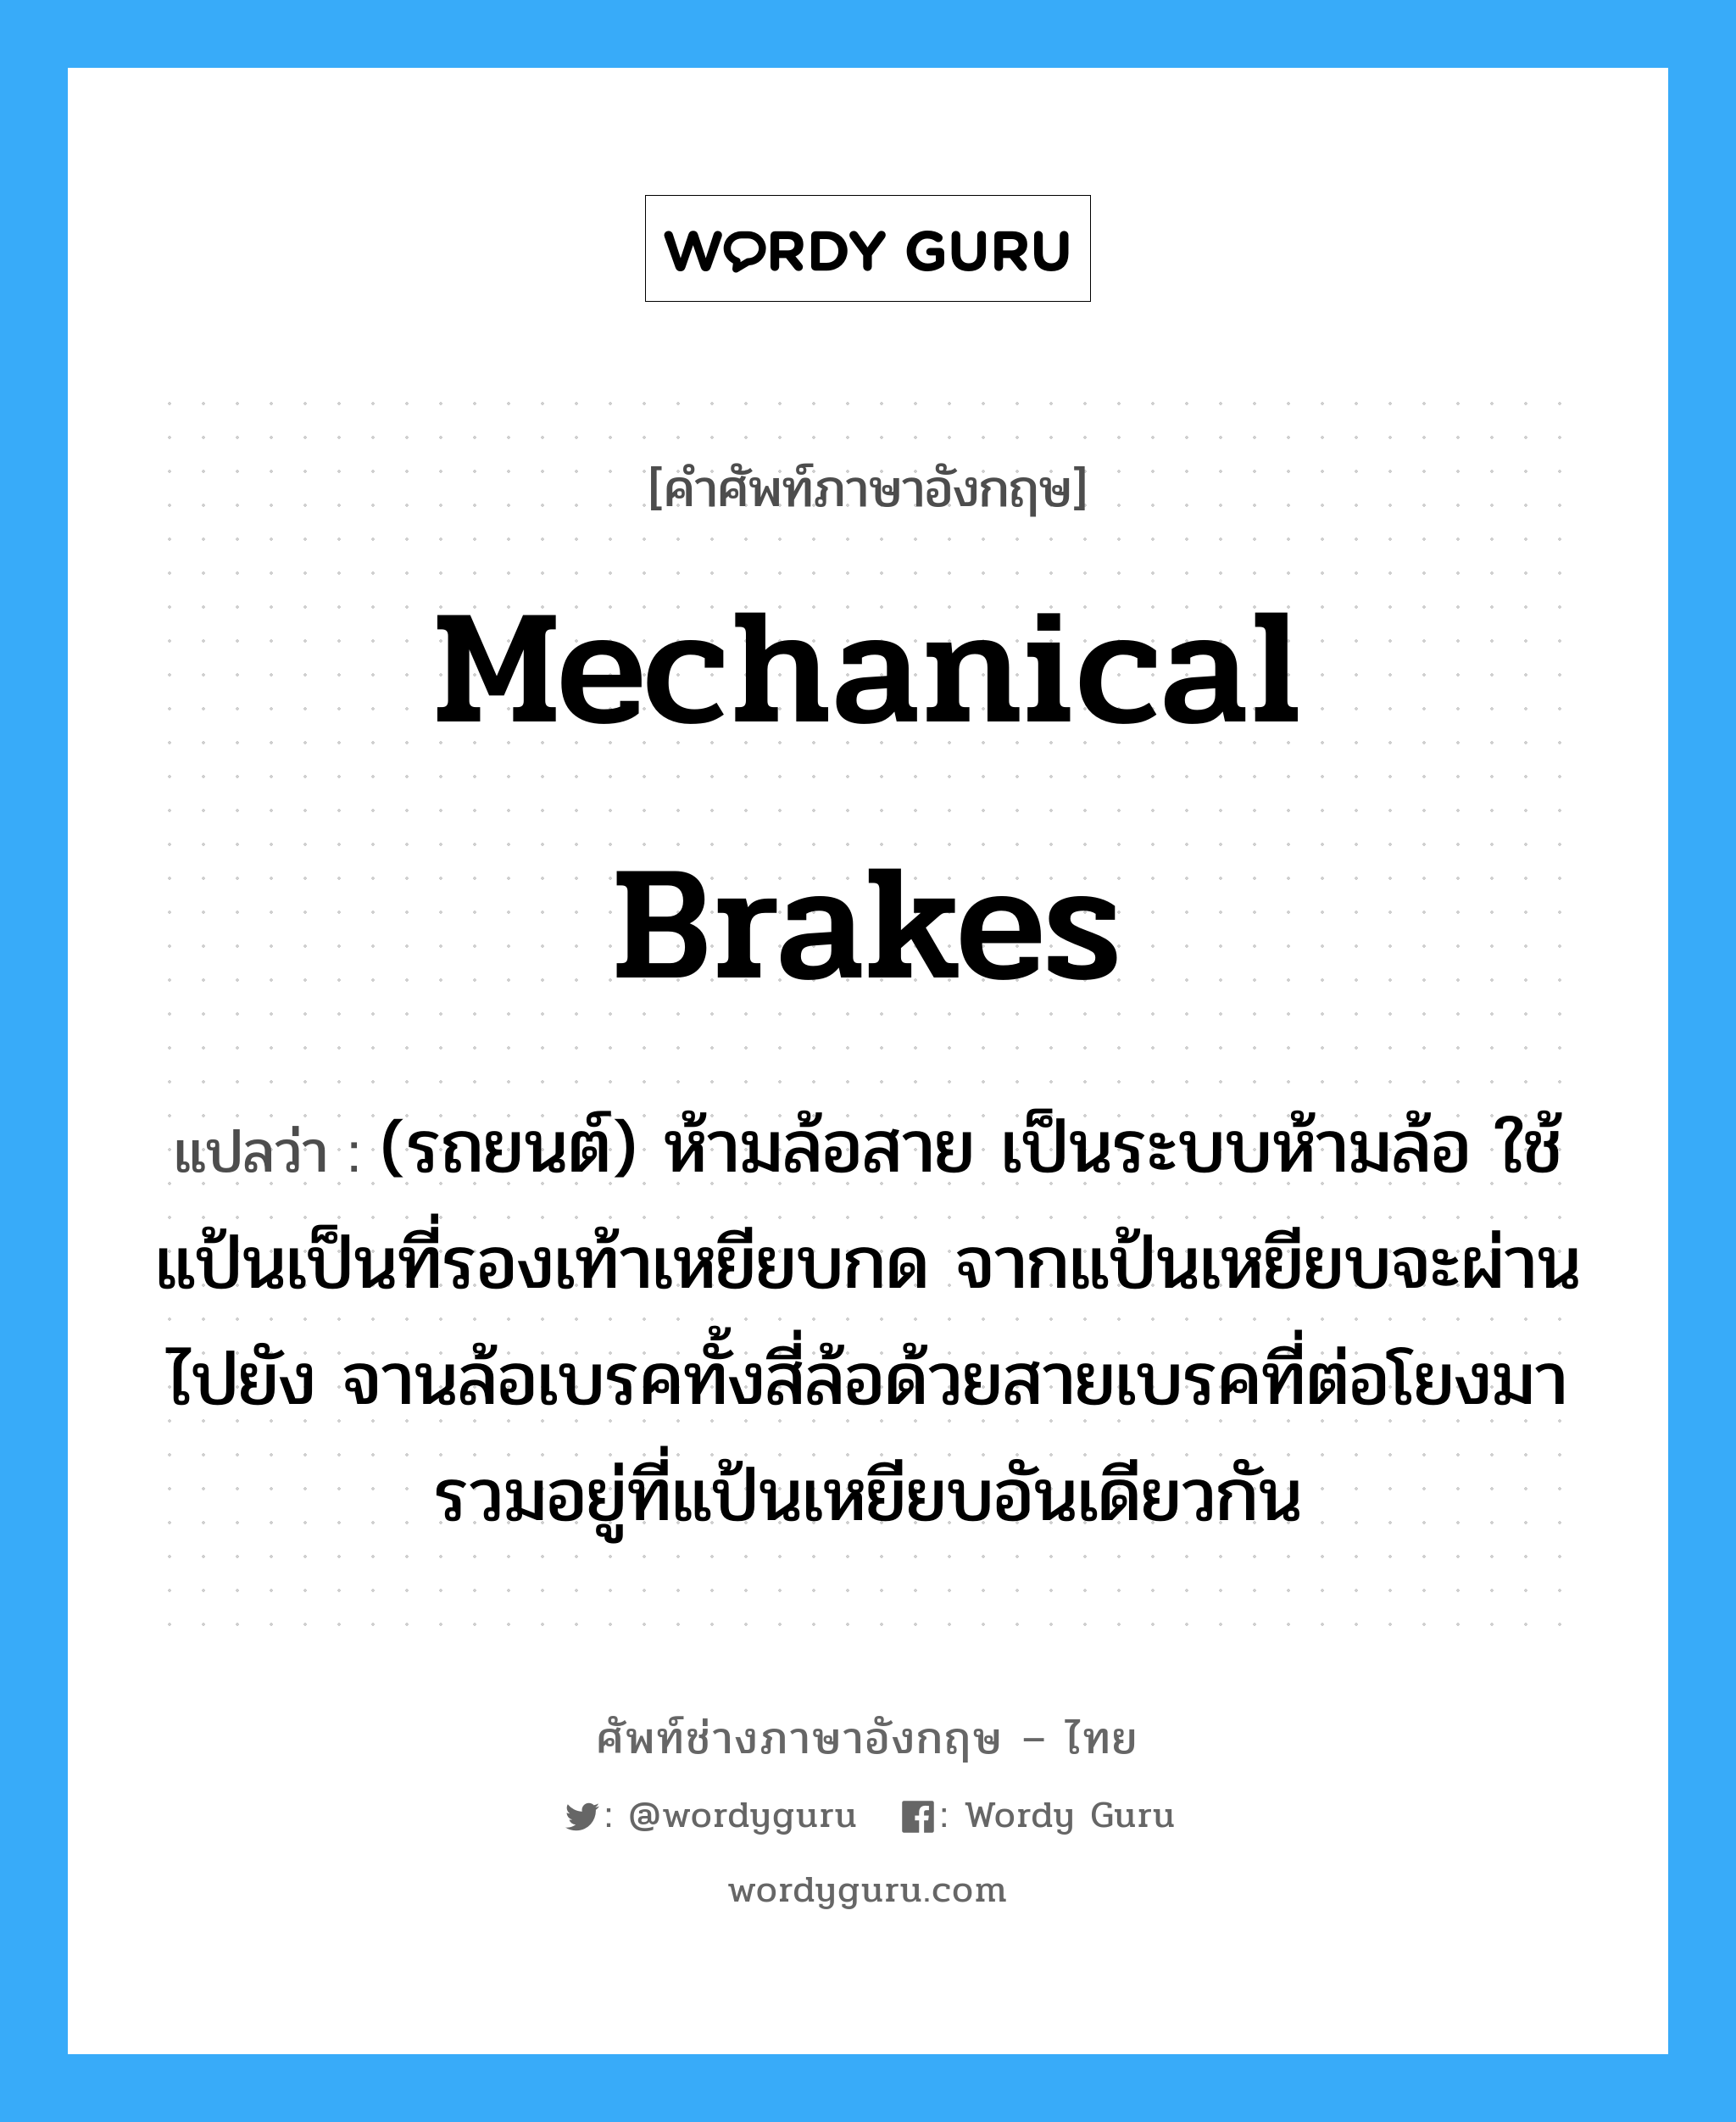 mechanical brakes แปลว่า?, คำศัพท์ช่างภาษาอังกฤษ - ไทย mechanical brakes คำศัพท์ภาษาอังกฤษ mechanical brakes แปลว่า (รถยนต์) ห้ามล้อสาย เป็นระบบห้ามล้อ ใช้แป้นเป็นที่รองเท้าเหยียบกด จากแป้นเหยียบจะผ่านไปยัง จานล้อเบรคทั้งสี่ล้อด้วยสายเบรคที่ต่อโยงมารวมอยู่ที่แป้นเหยียบอันเดียวกัน